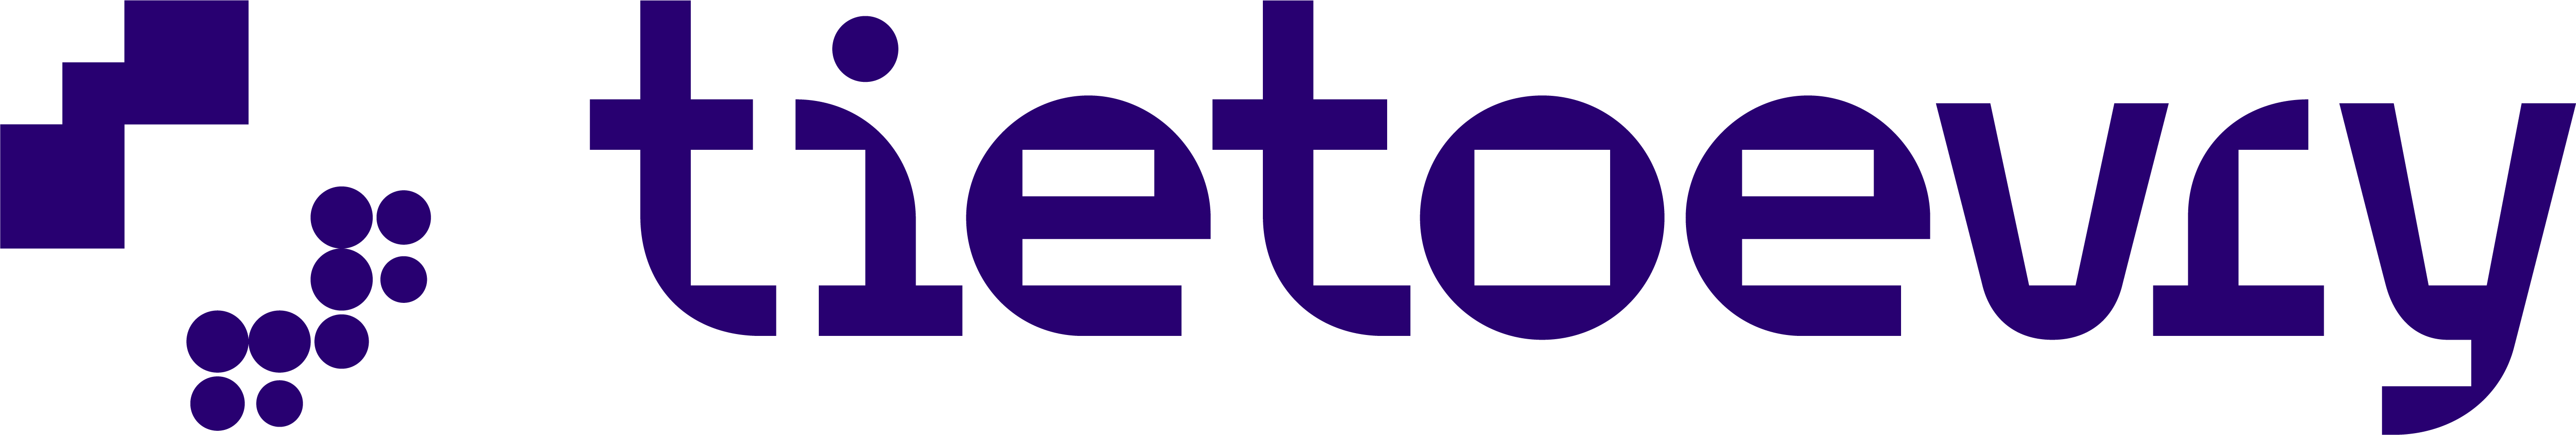 Logotipo de Tietoevry